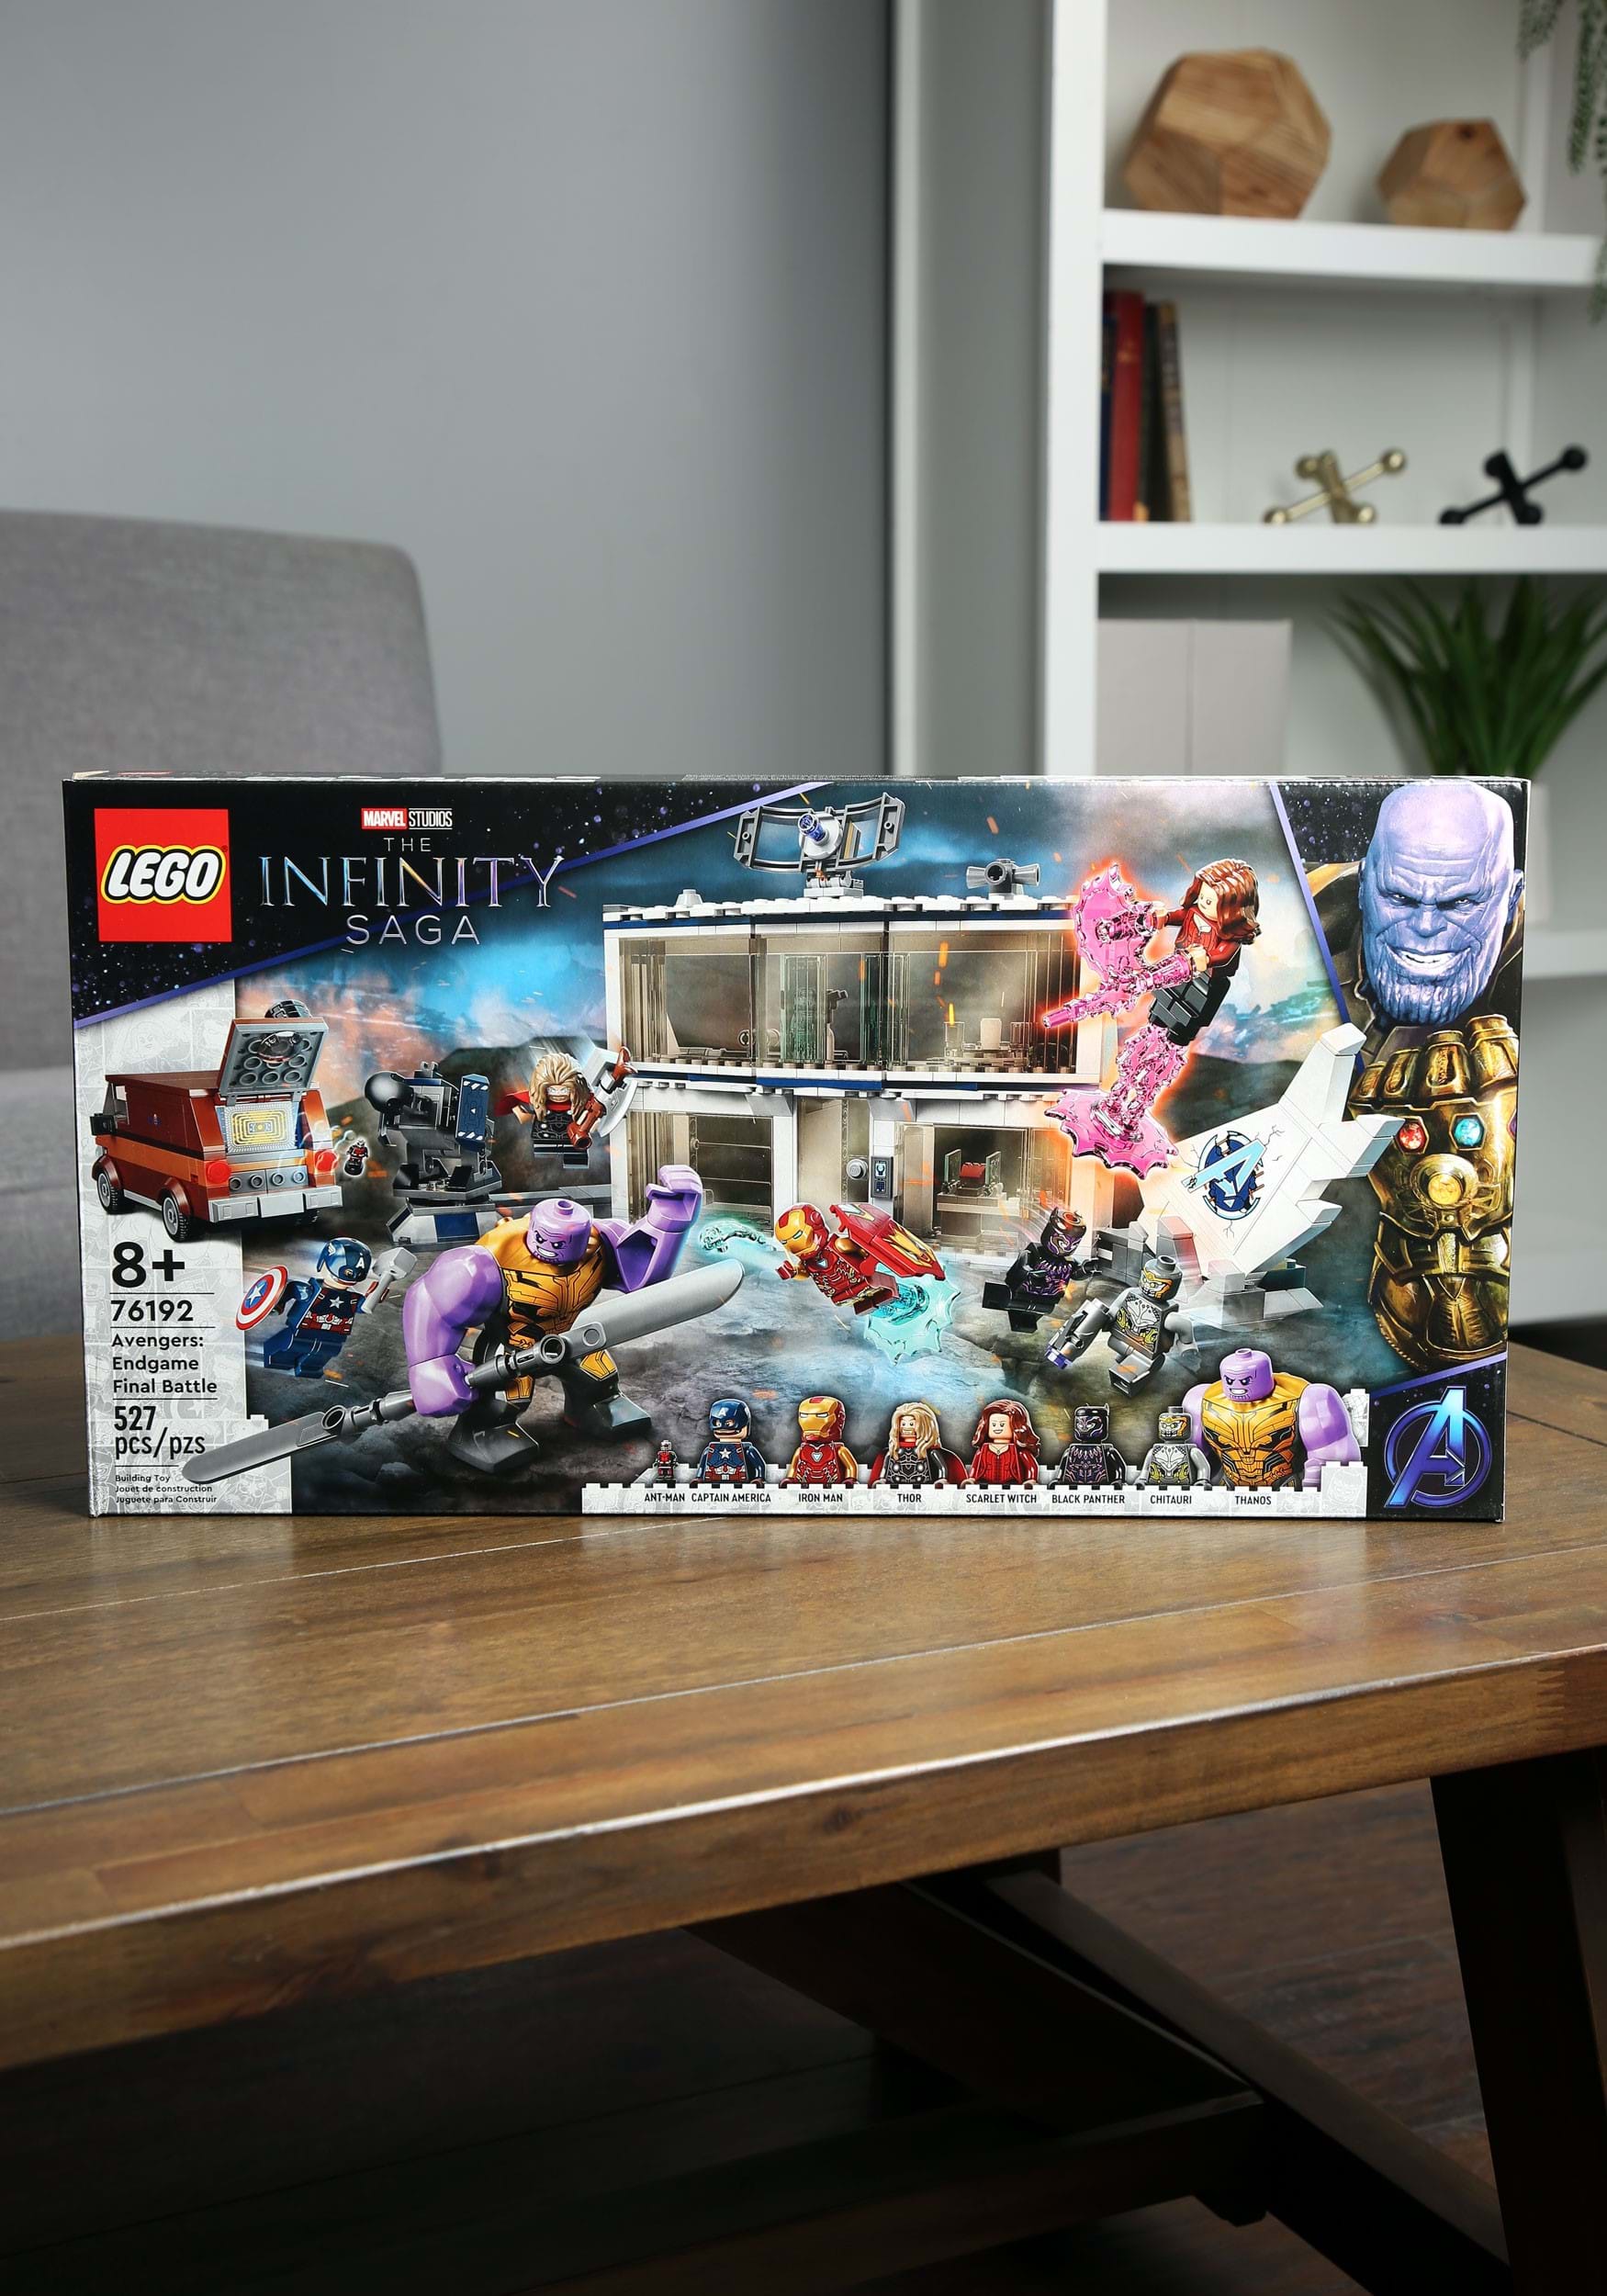 Marvel Infinity Saga Avengers: Endgame Battle Building Set from LEGO